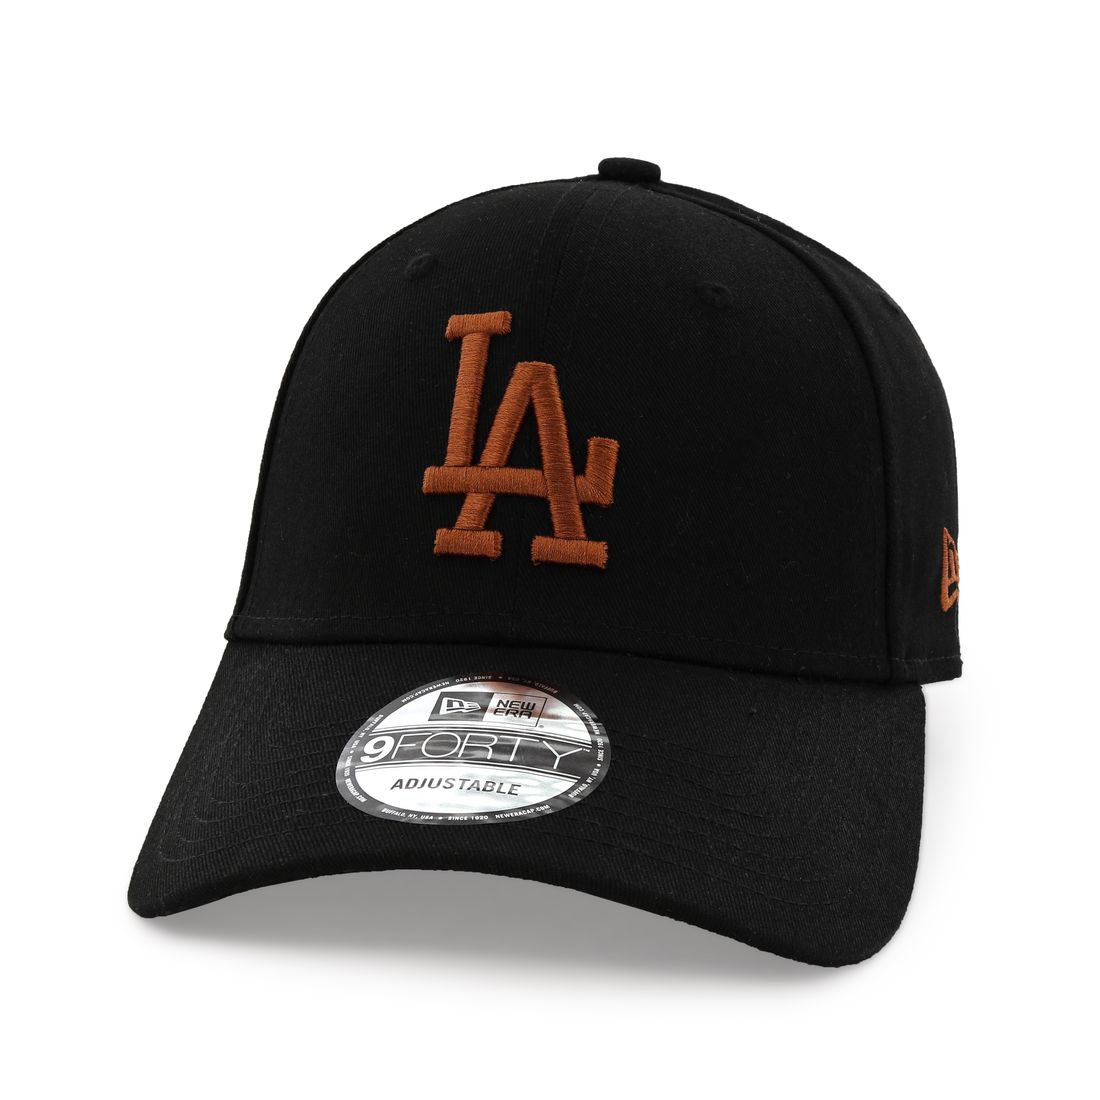 قبعة للرجال تحمل علامة فريق لوس أنجلوس دودجرز ليغ اسينشيال من نيو إيرا لون أسود